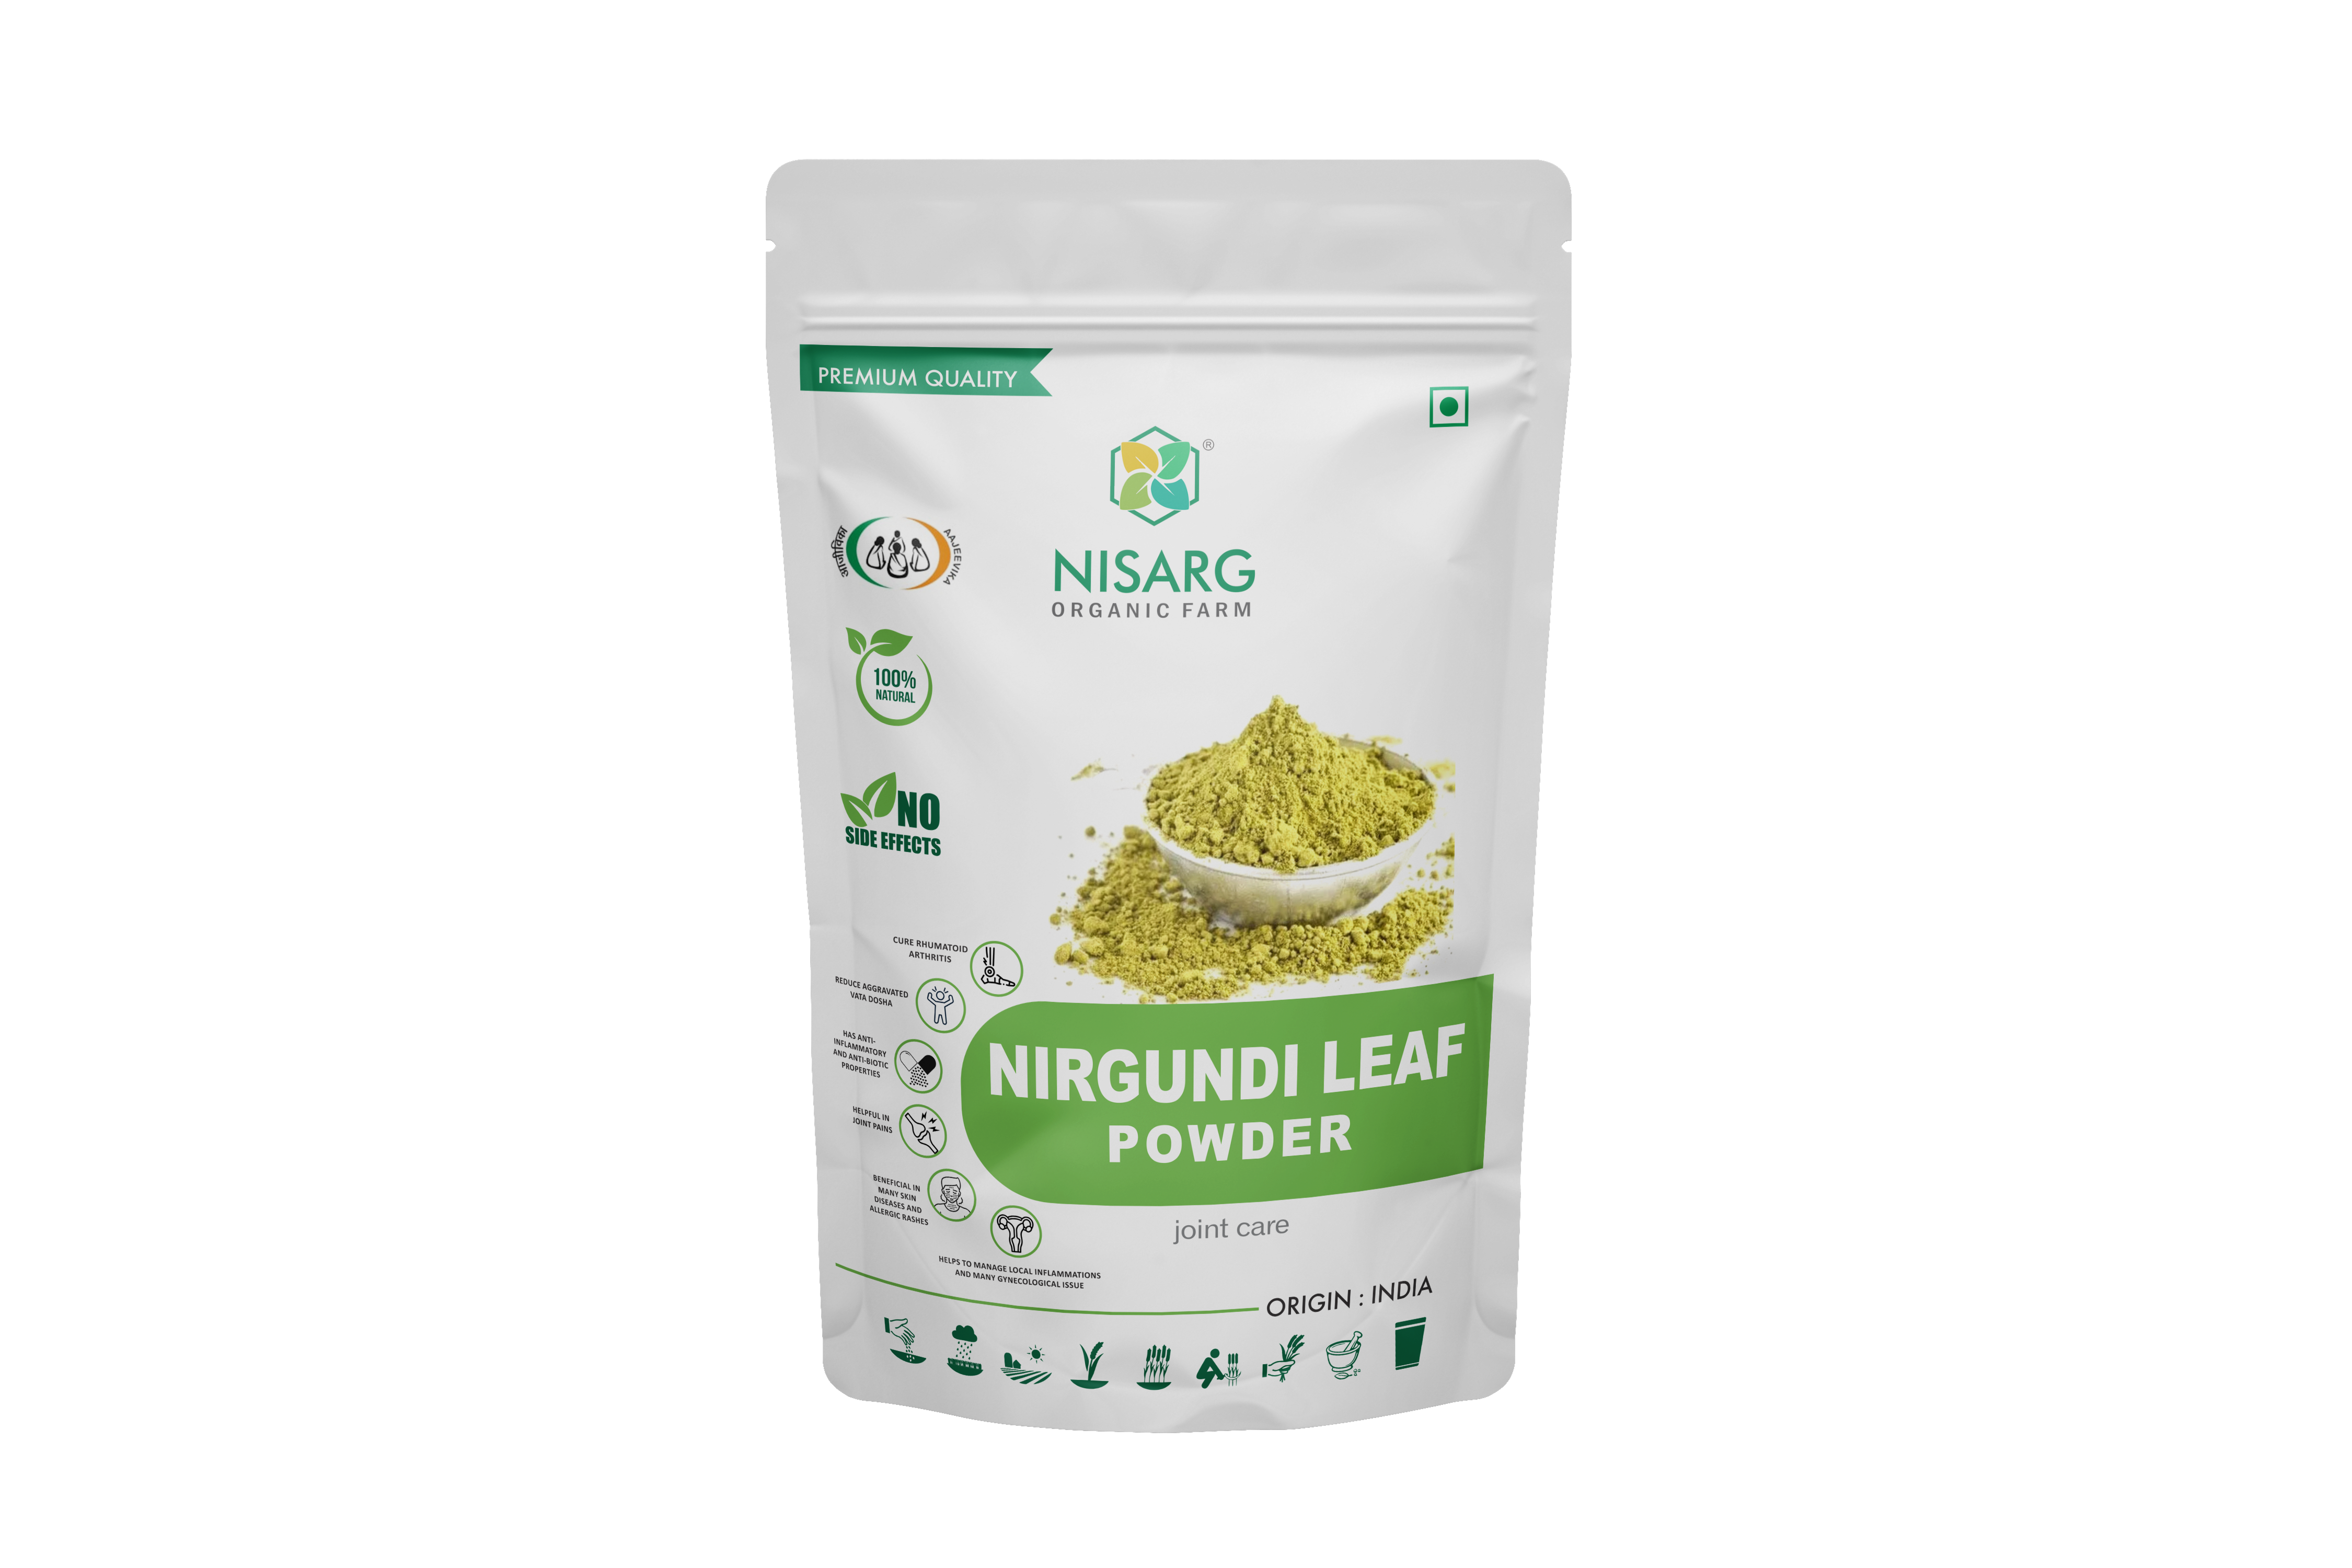 Product: Nisarg Nirgundi Leaf Powder